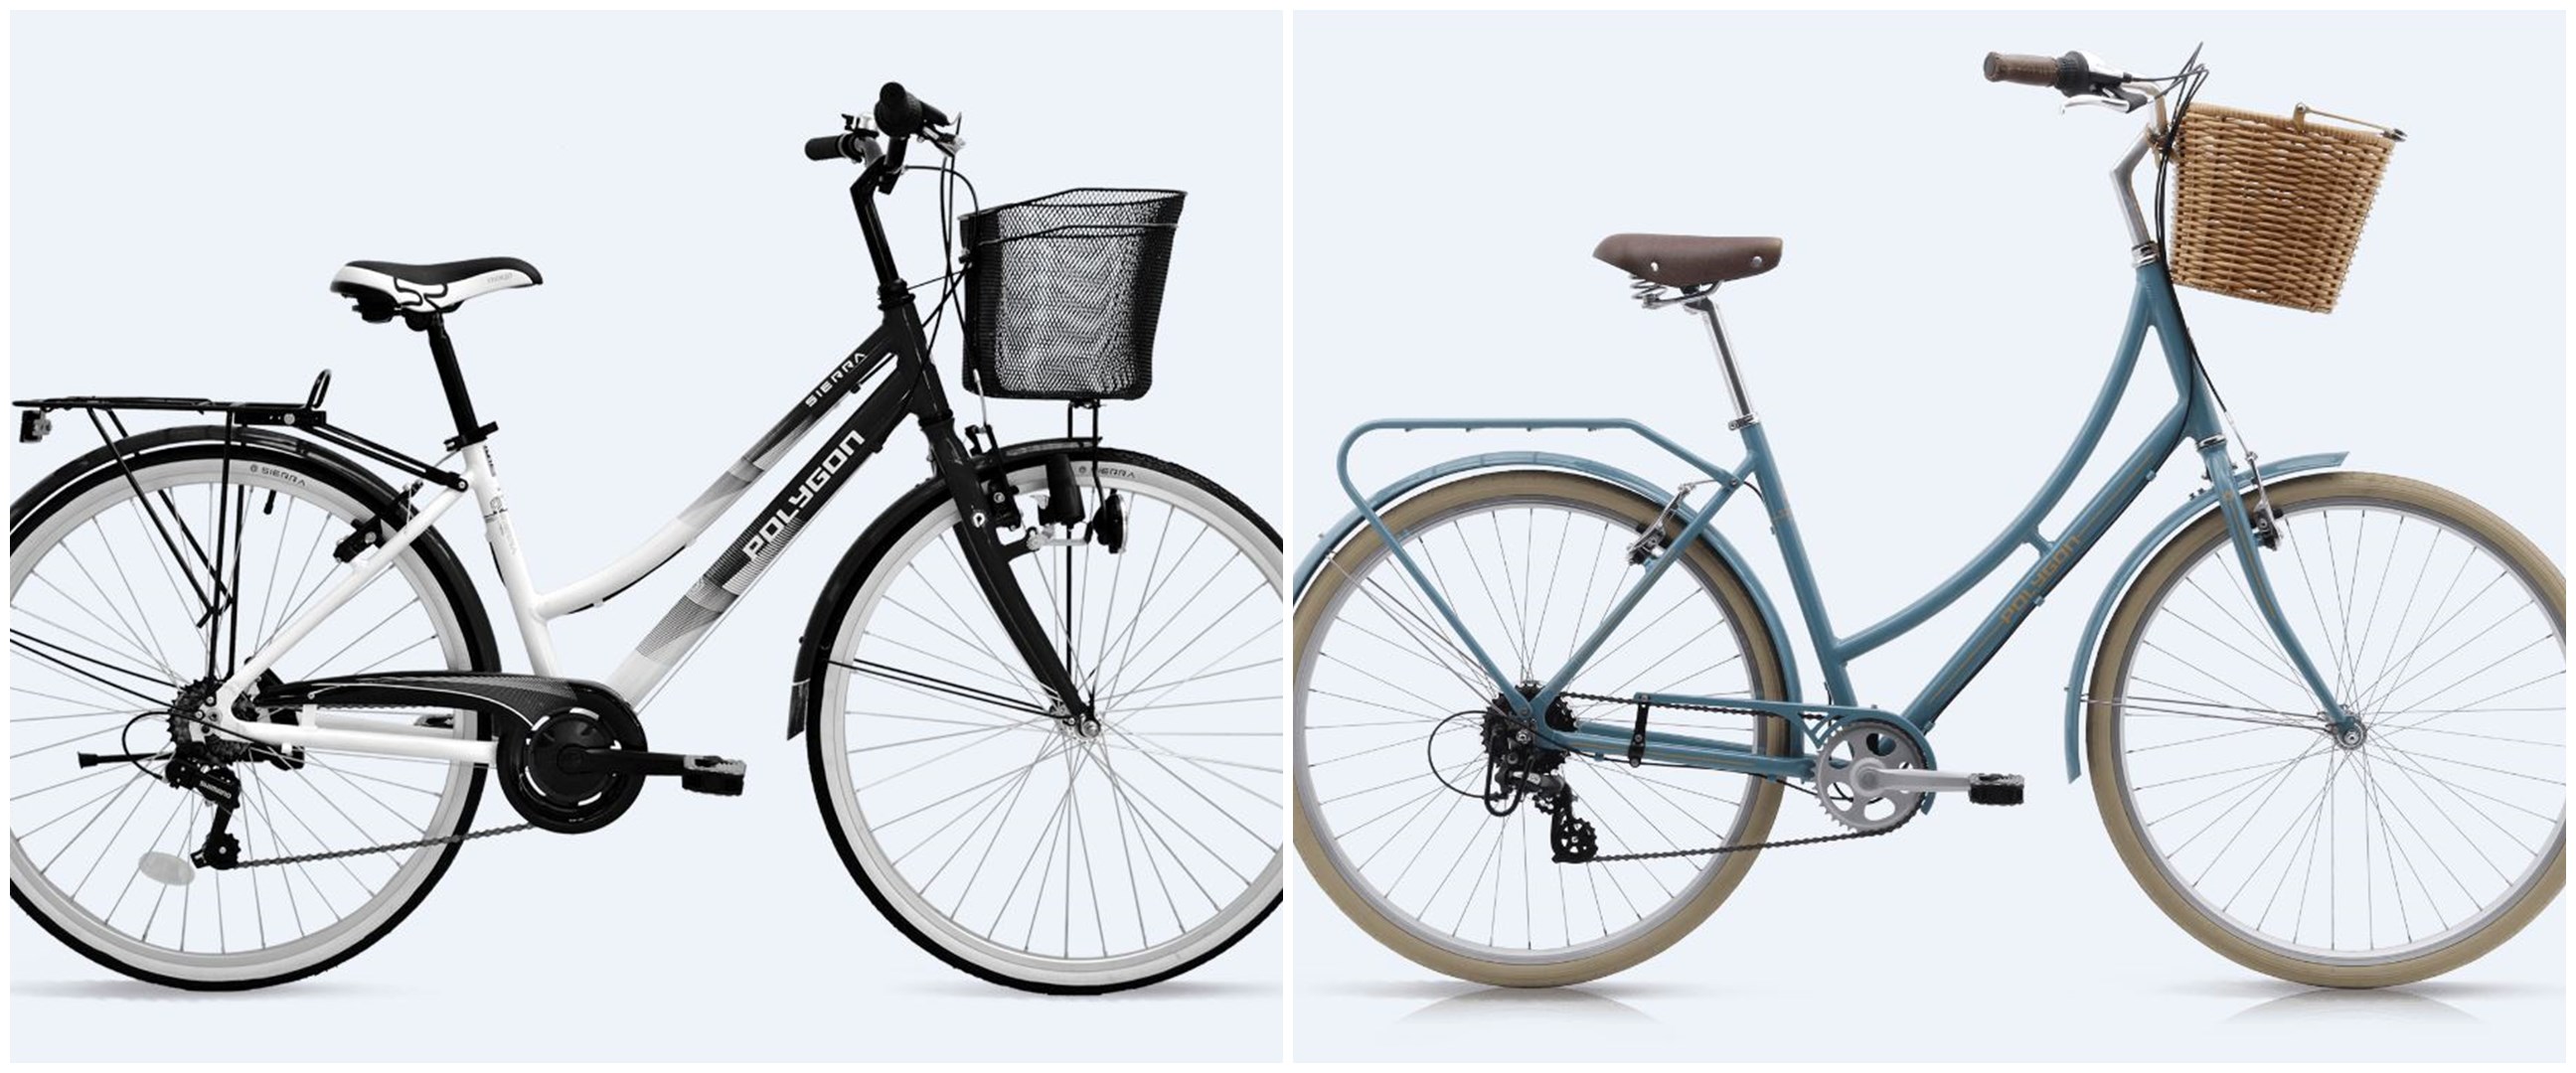 Harga sepeda Polygon Sierra dan spesifikasinya, nyaman dan praktis